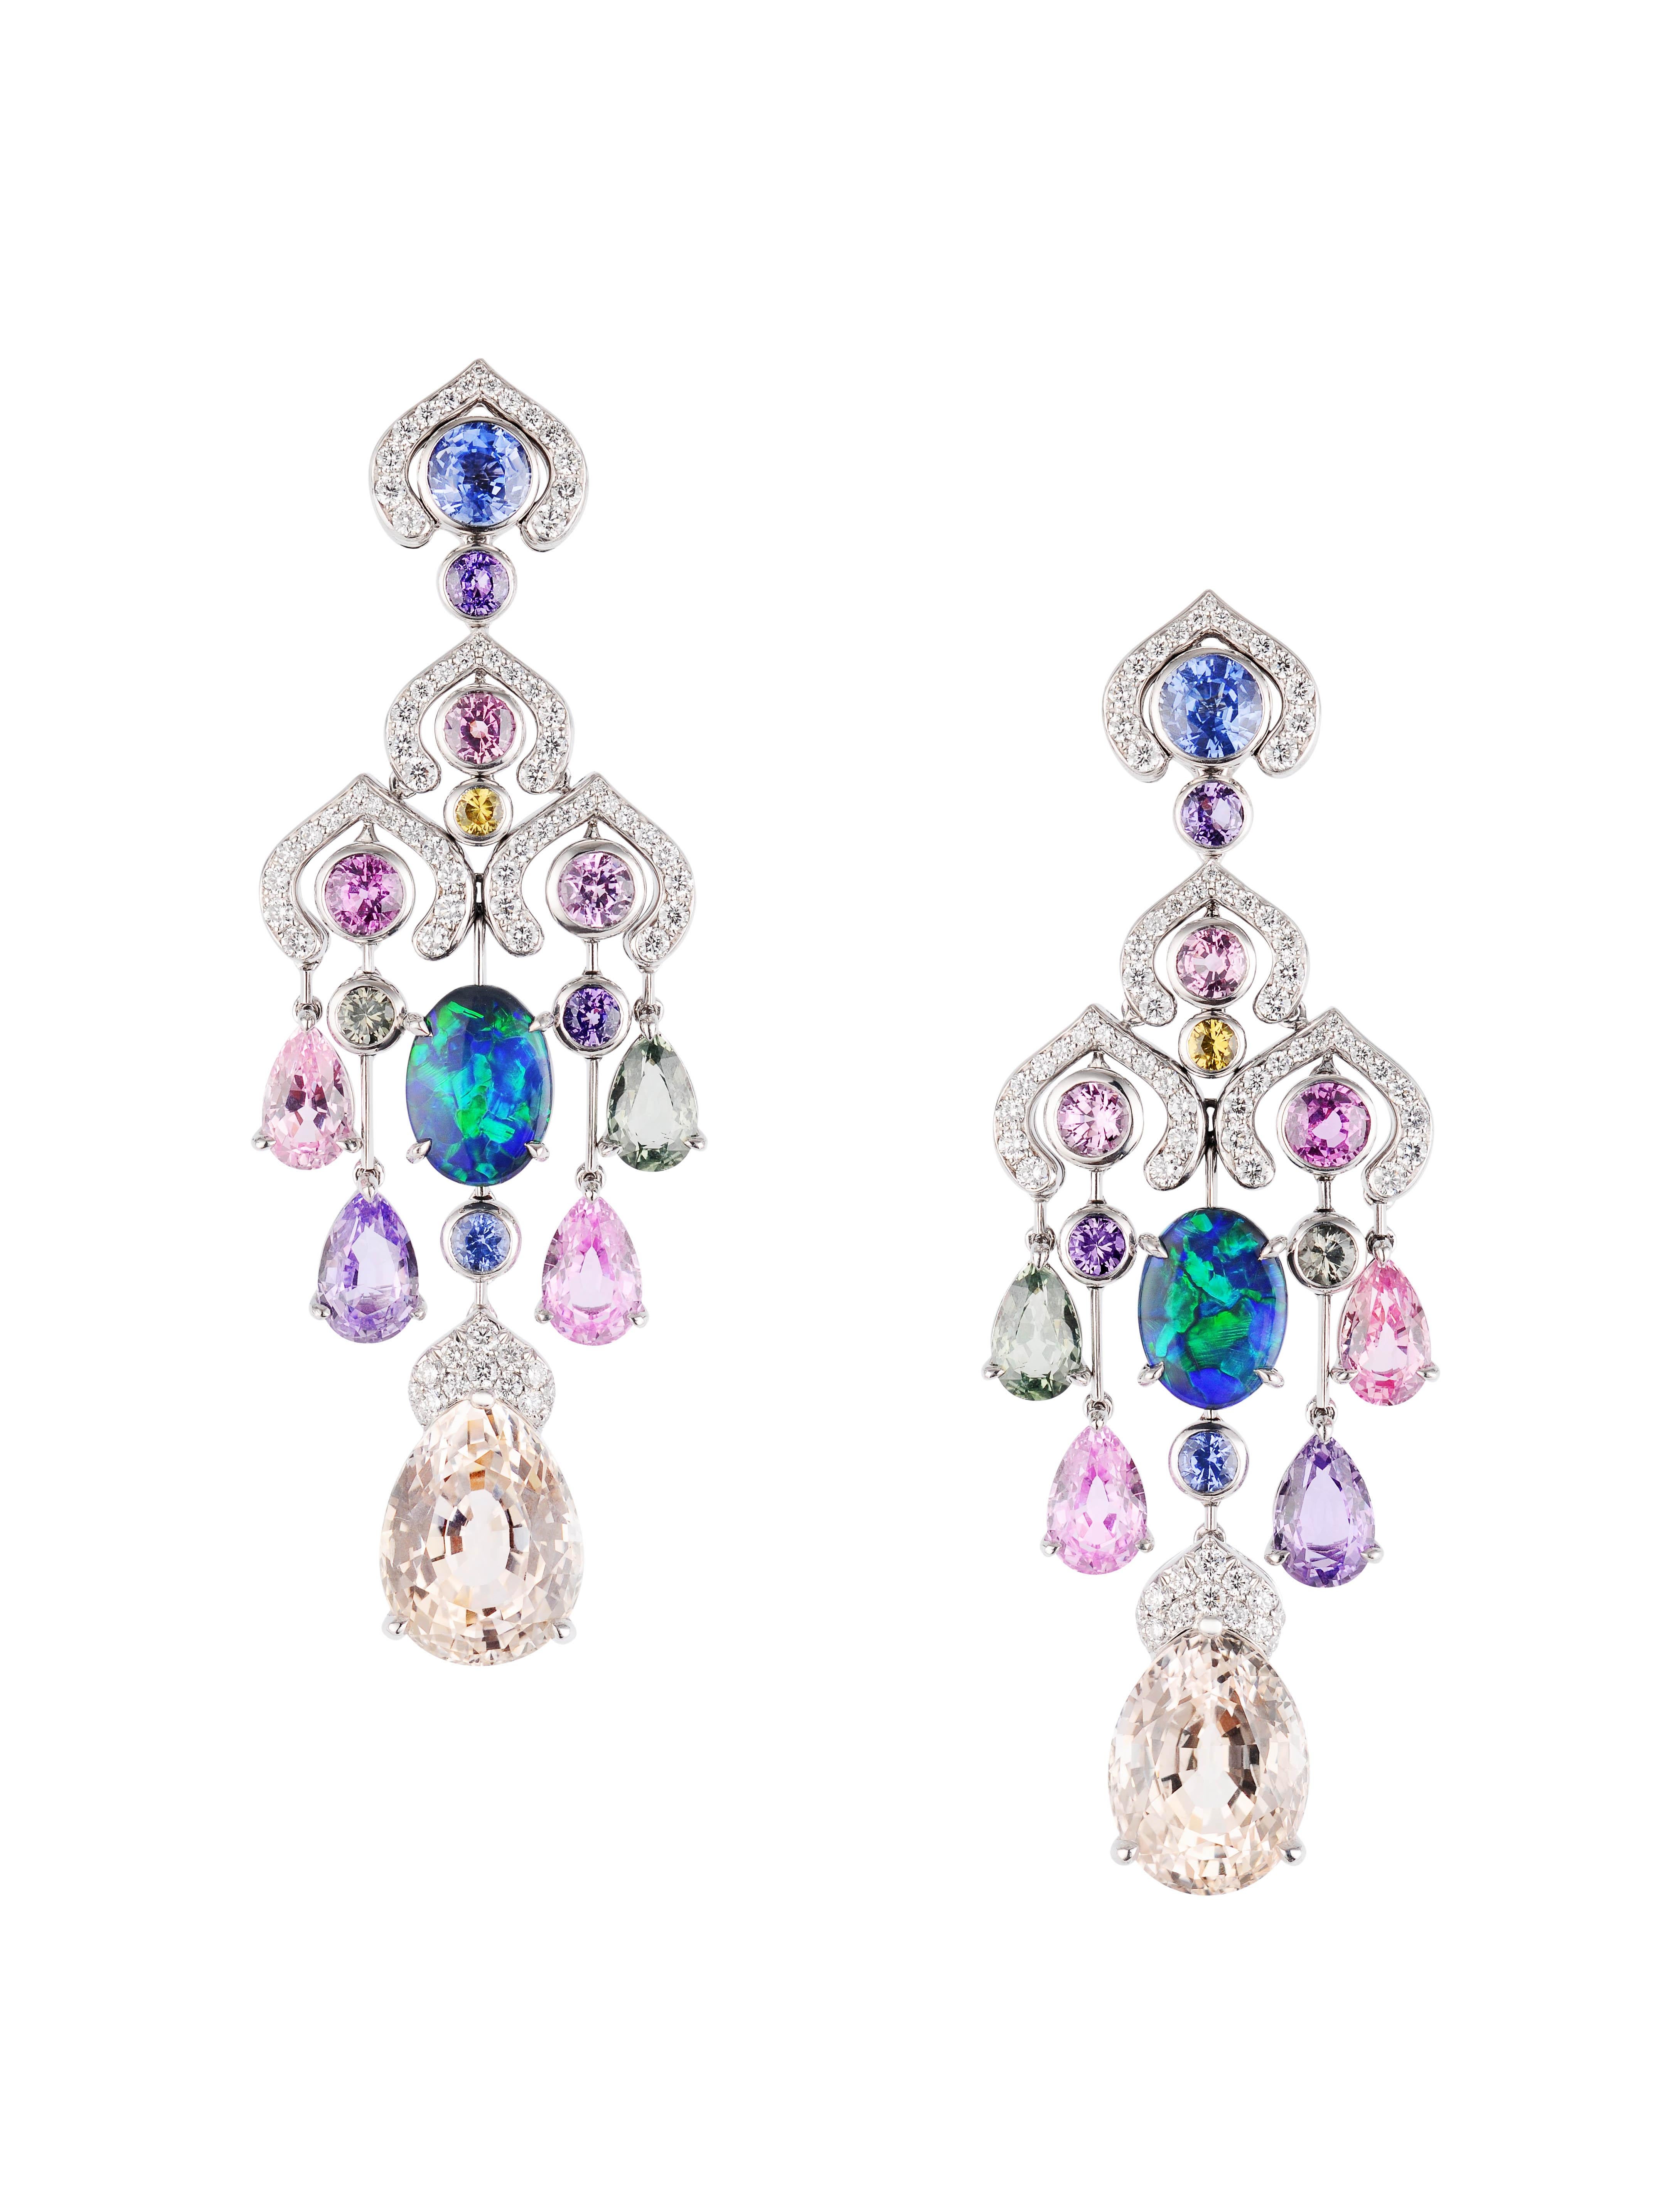 Belle Époque Limited Edition Fabergé Délices D’Été Diamonds and Pear Shape Sapphires Necklace For Sale